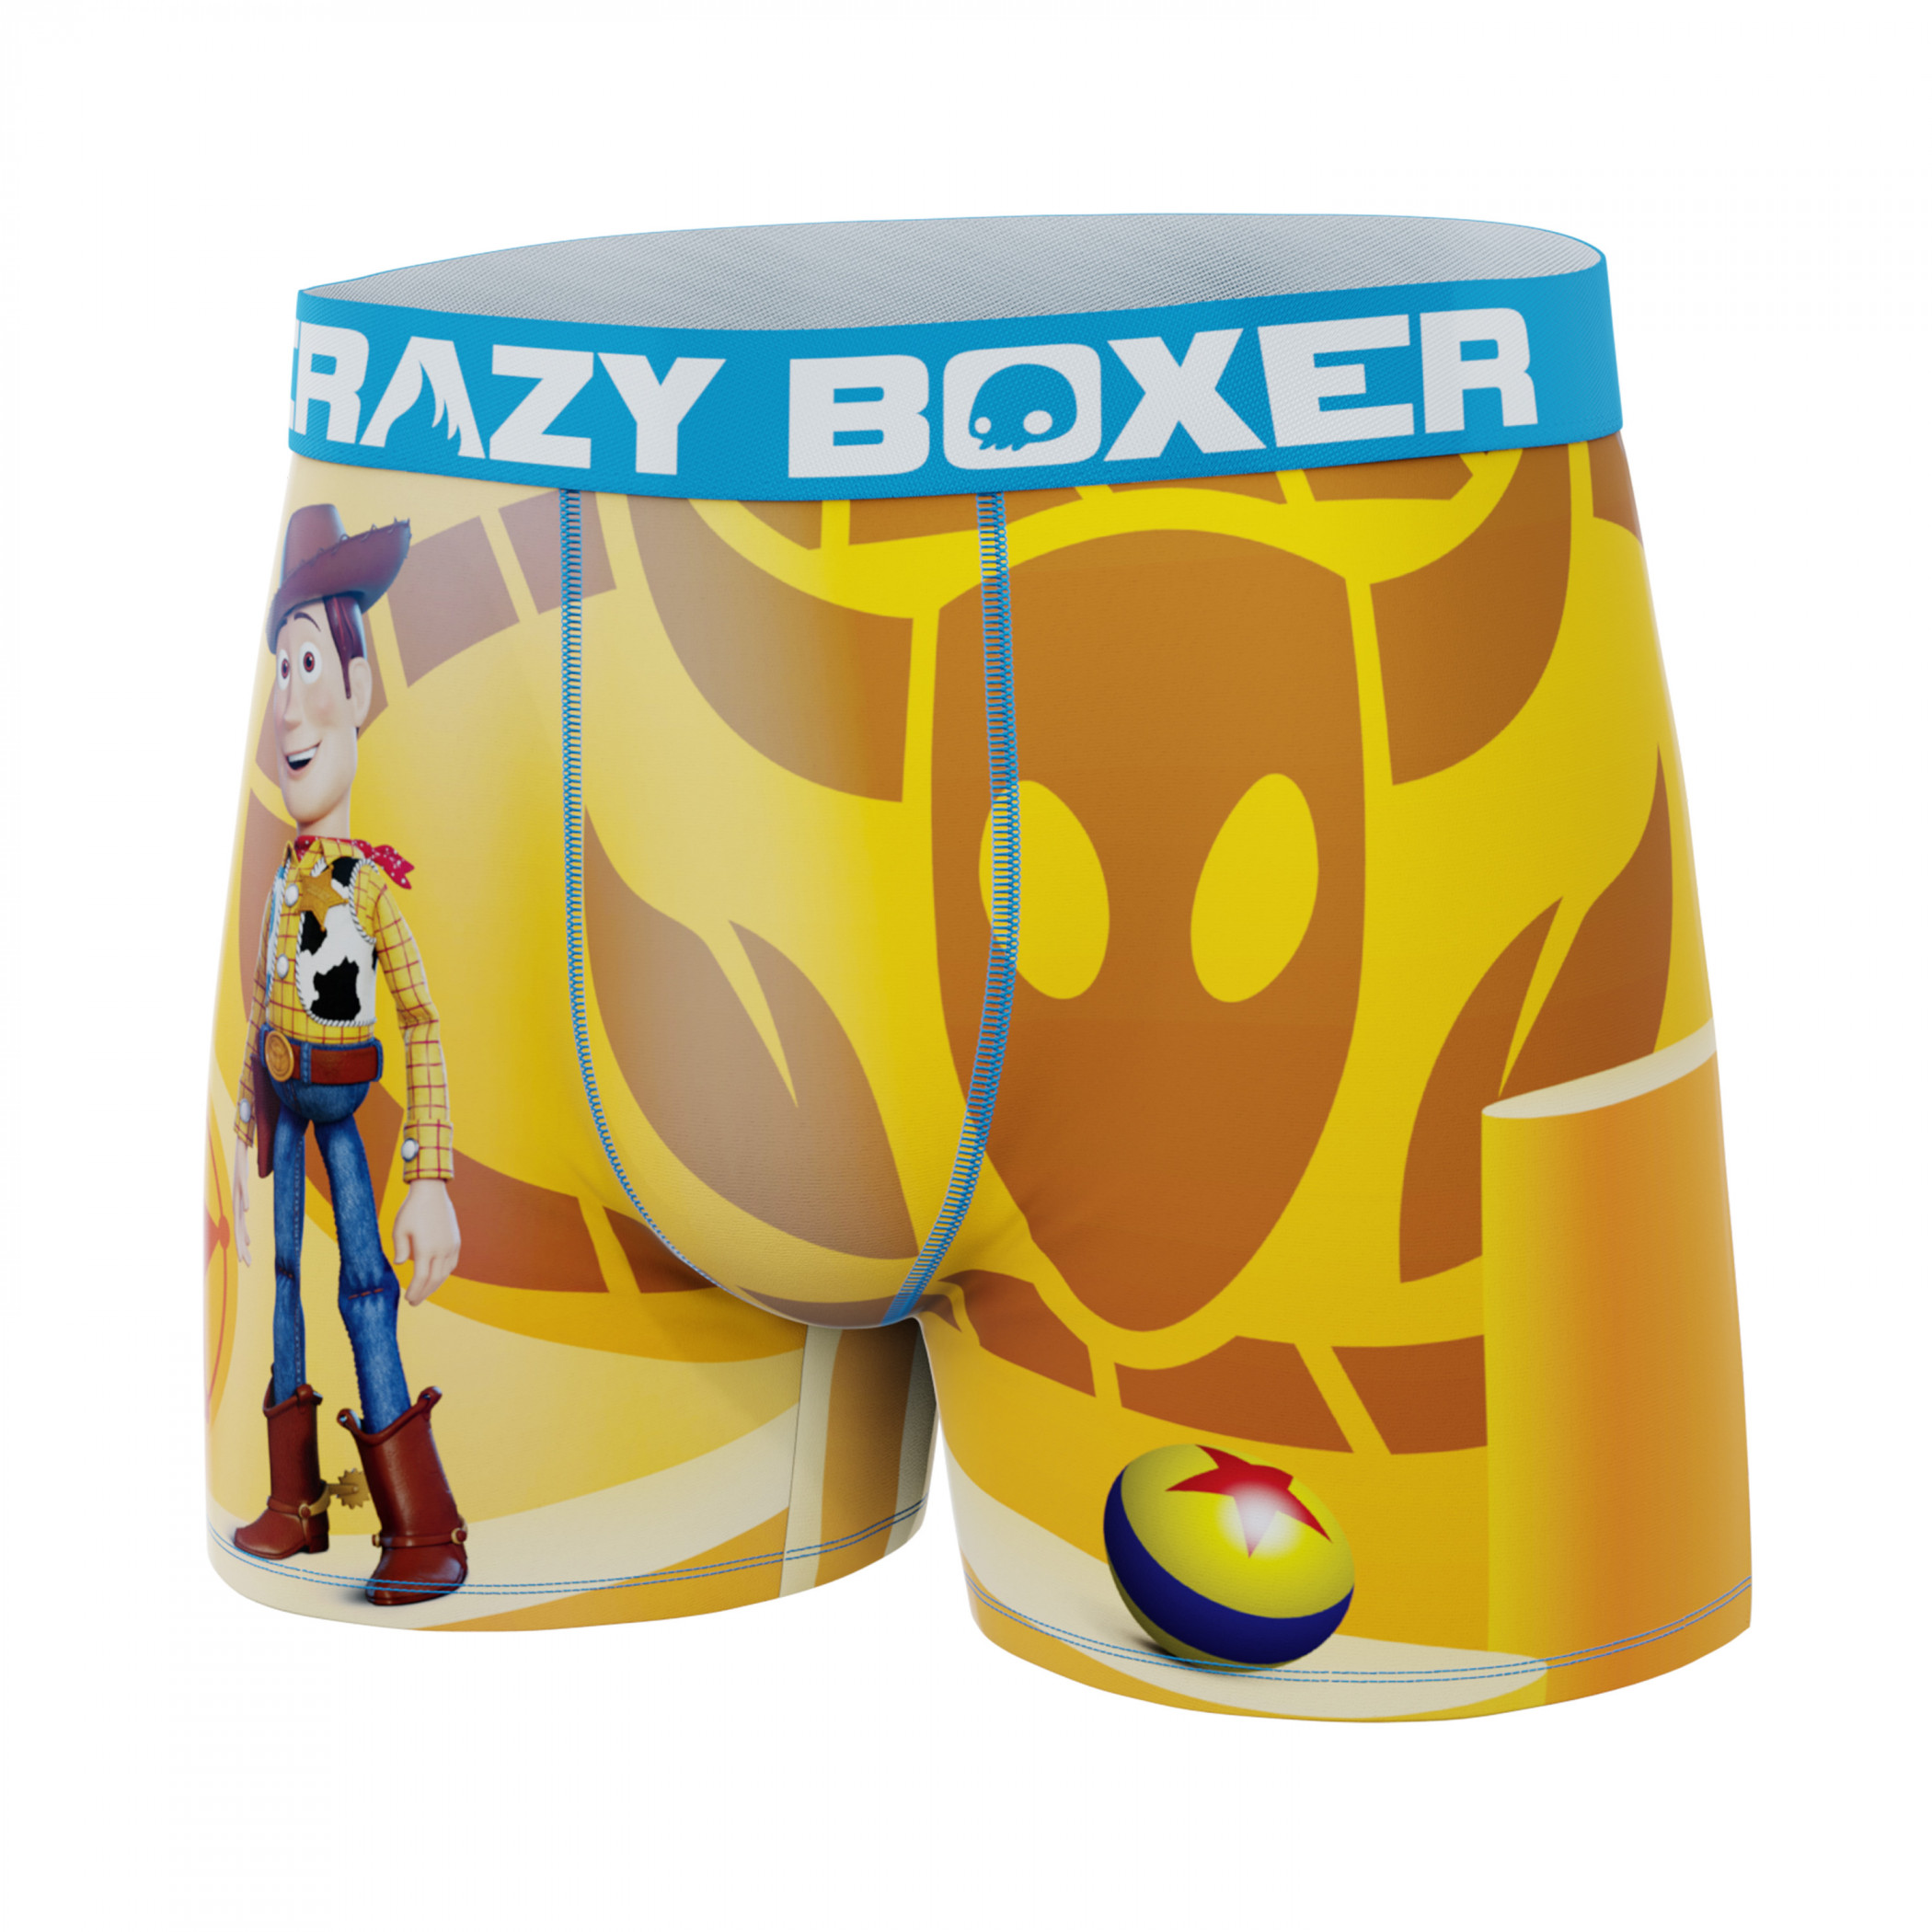 Toy Story Underwear